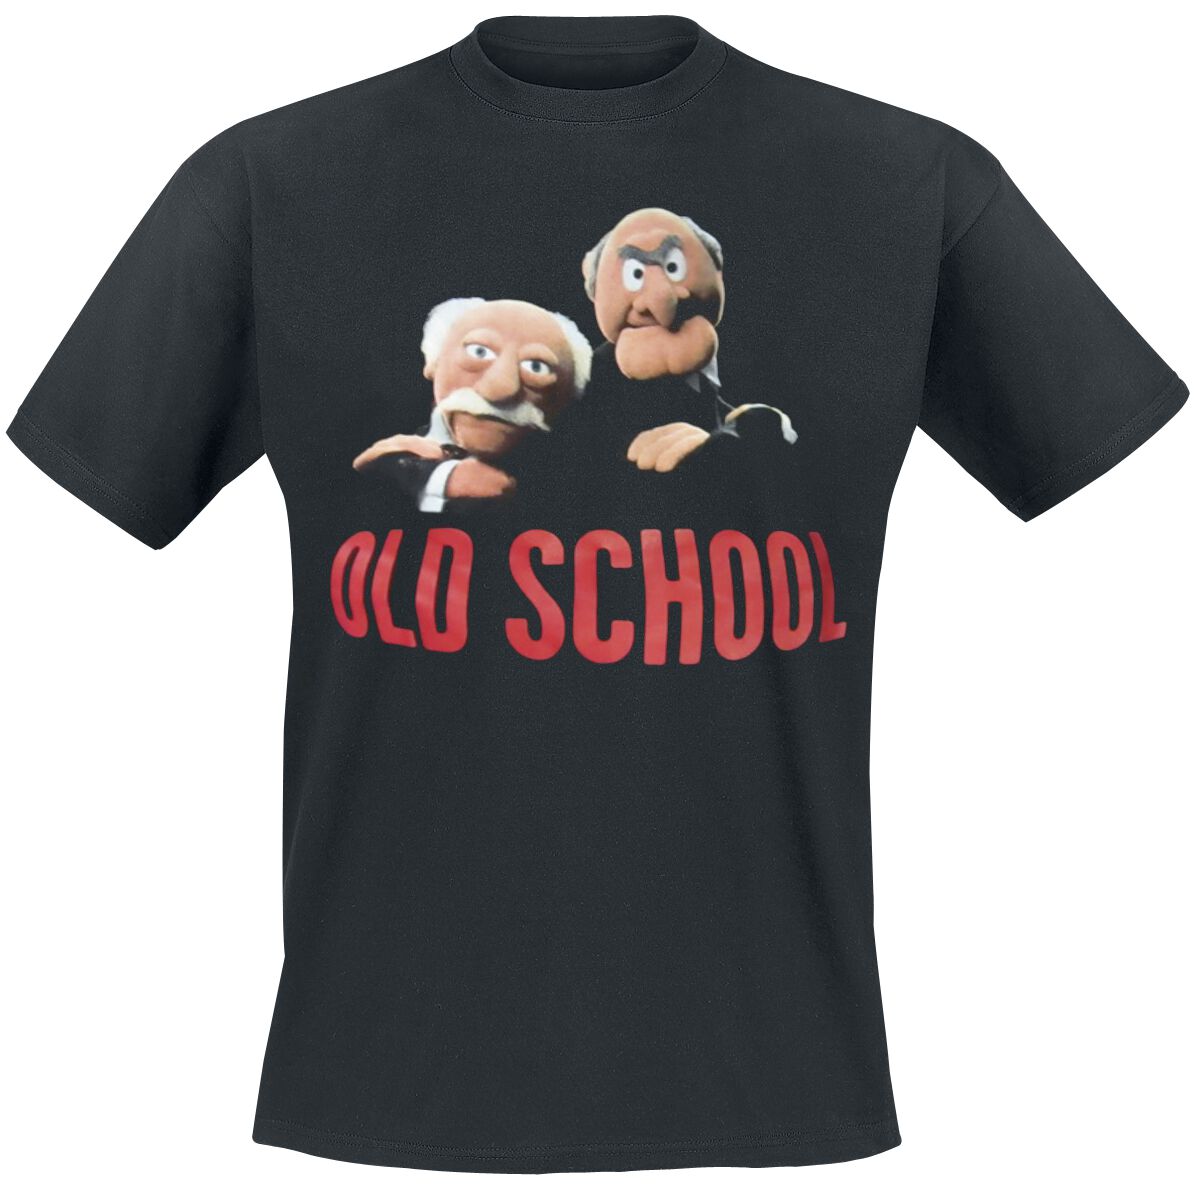 Die Muppets T-Shirt - Old School - M bis 5XL - für Männer - Größe 5XL - schwarz  - Lizenzierter Fanartikel